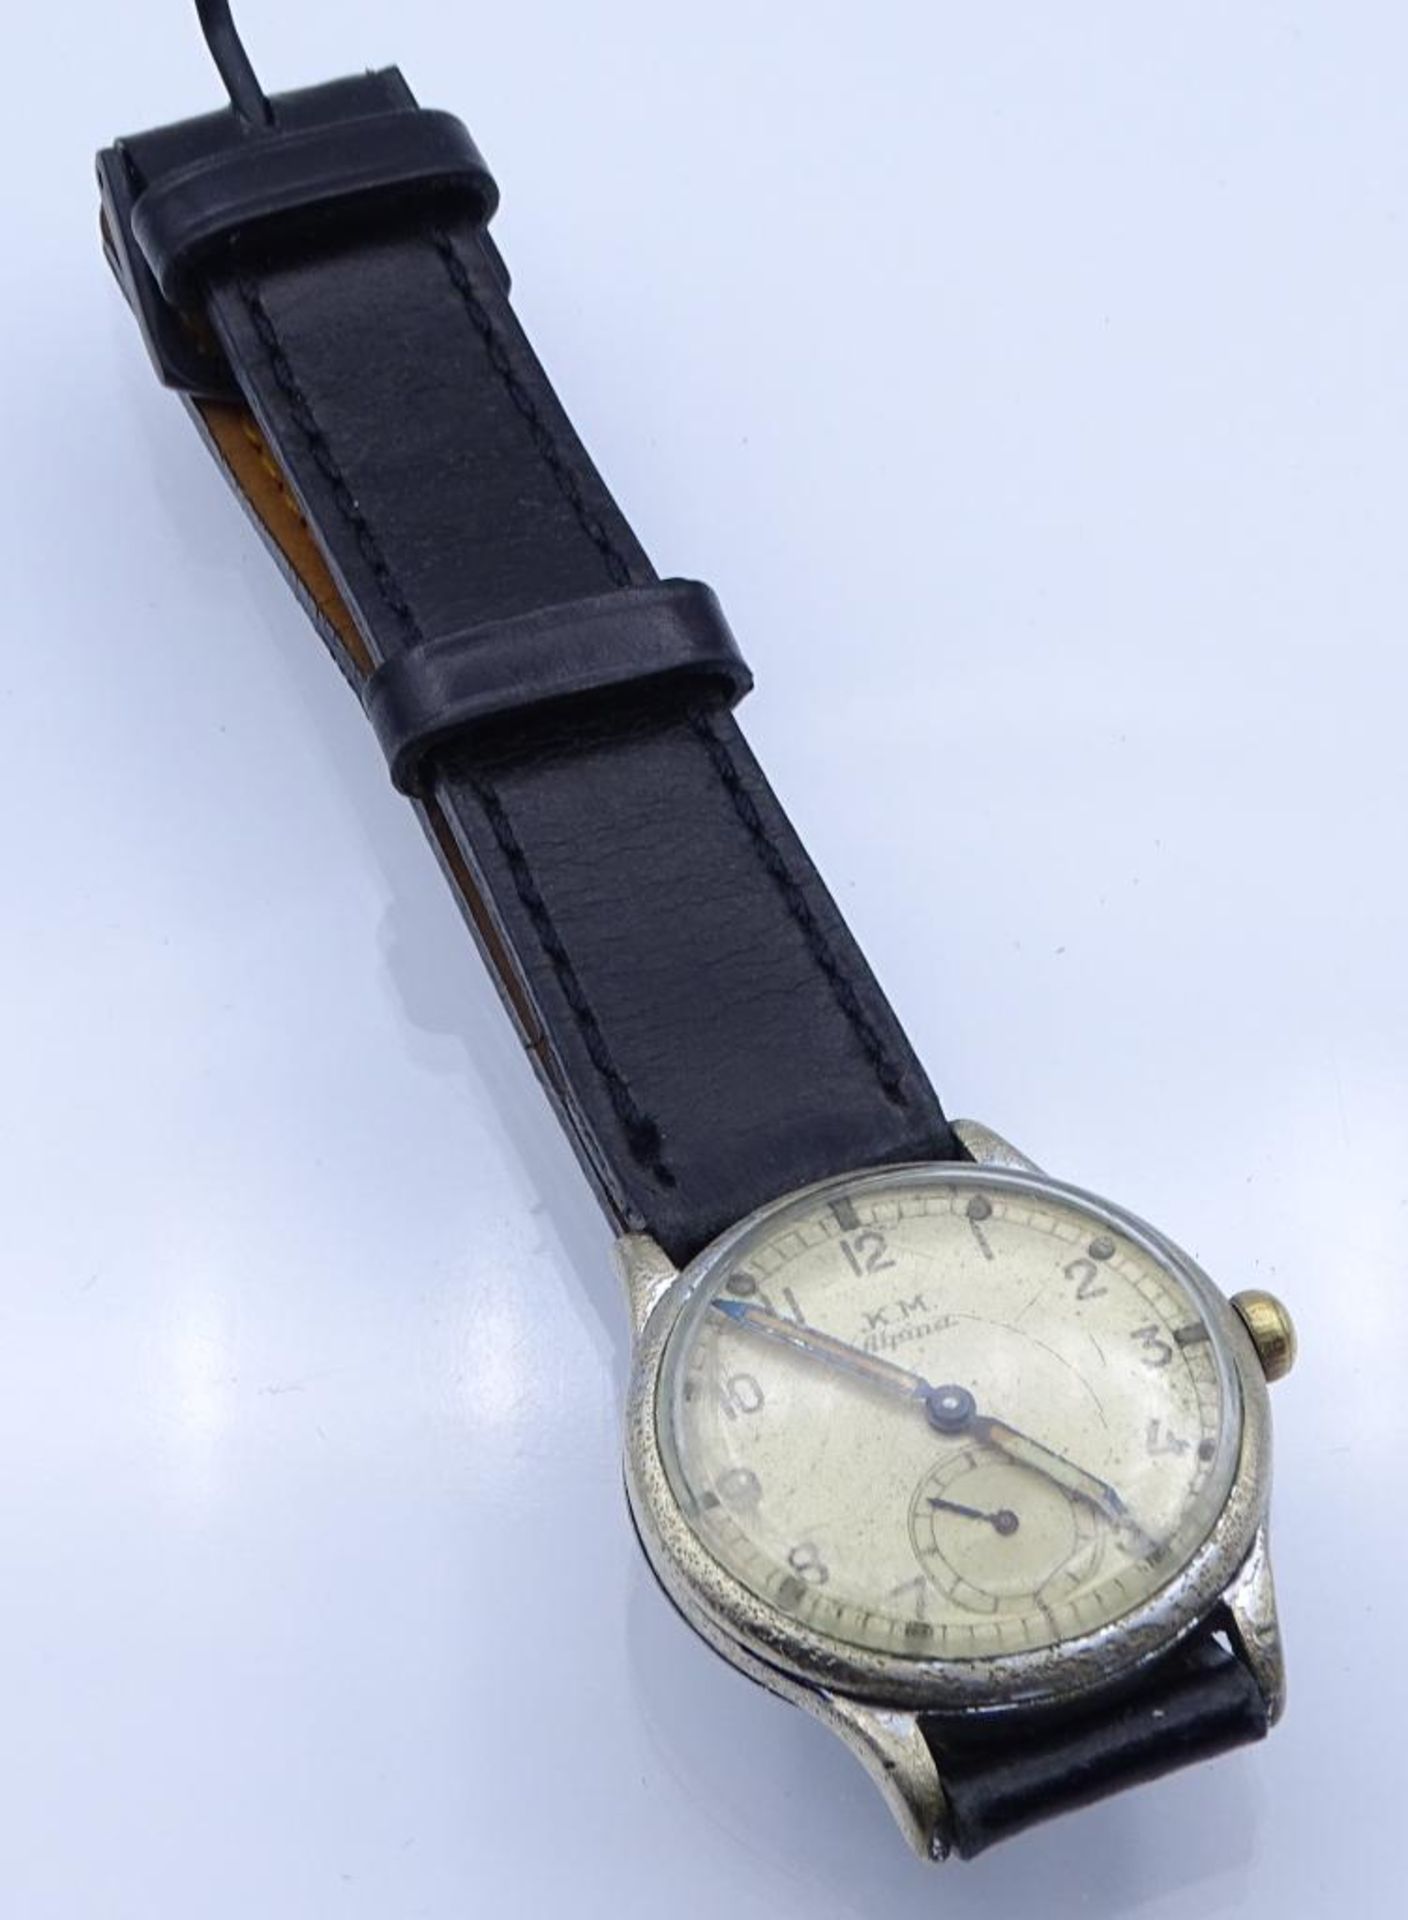 Kriegsmarine Armbanduhr "K.M.Alpina", Cal. 486, Edelstahlgehäuse,mechanisch,Werk läuft, Band - Bild 4 aus 6